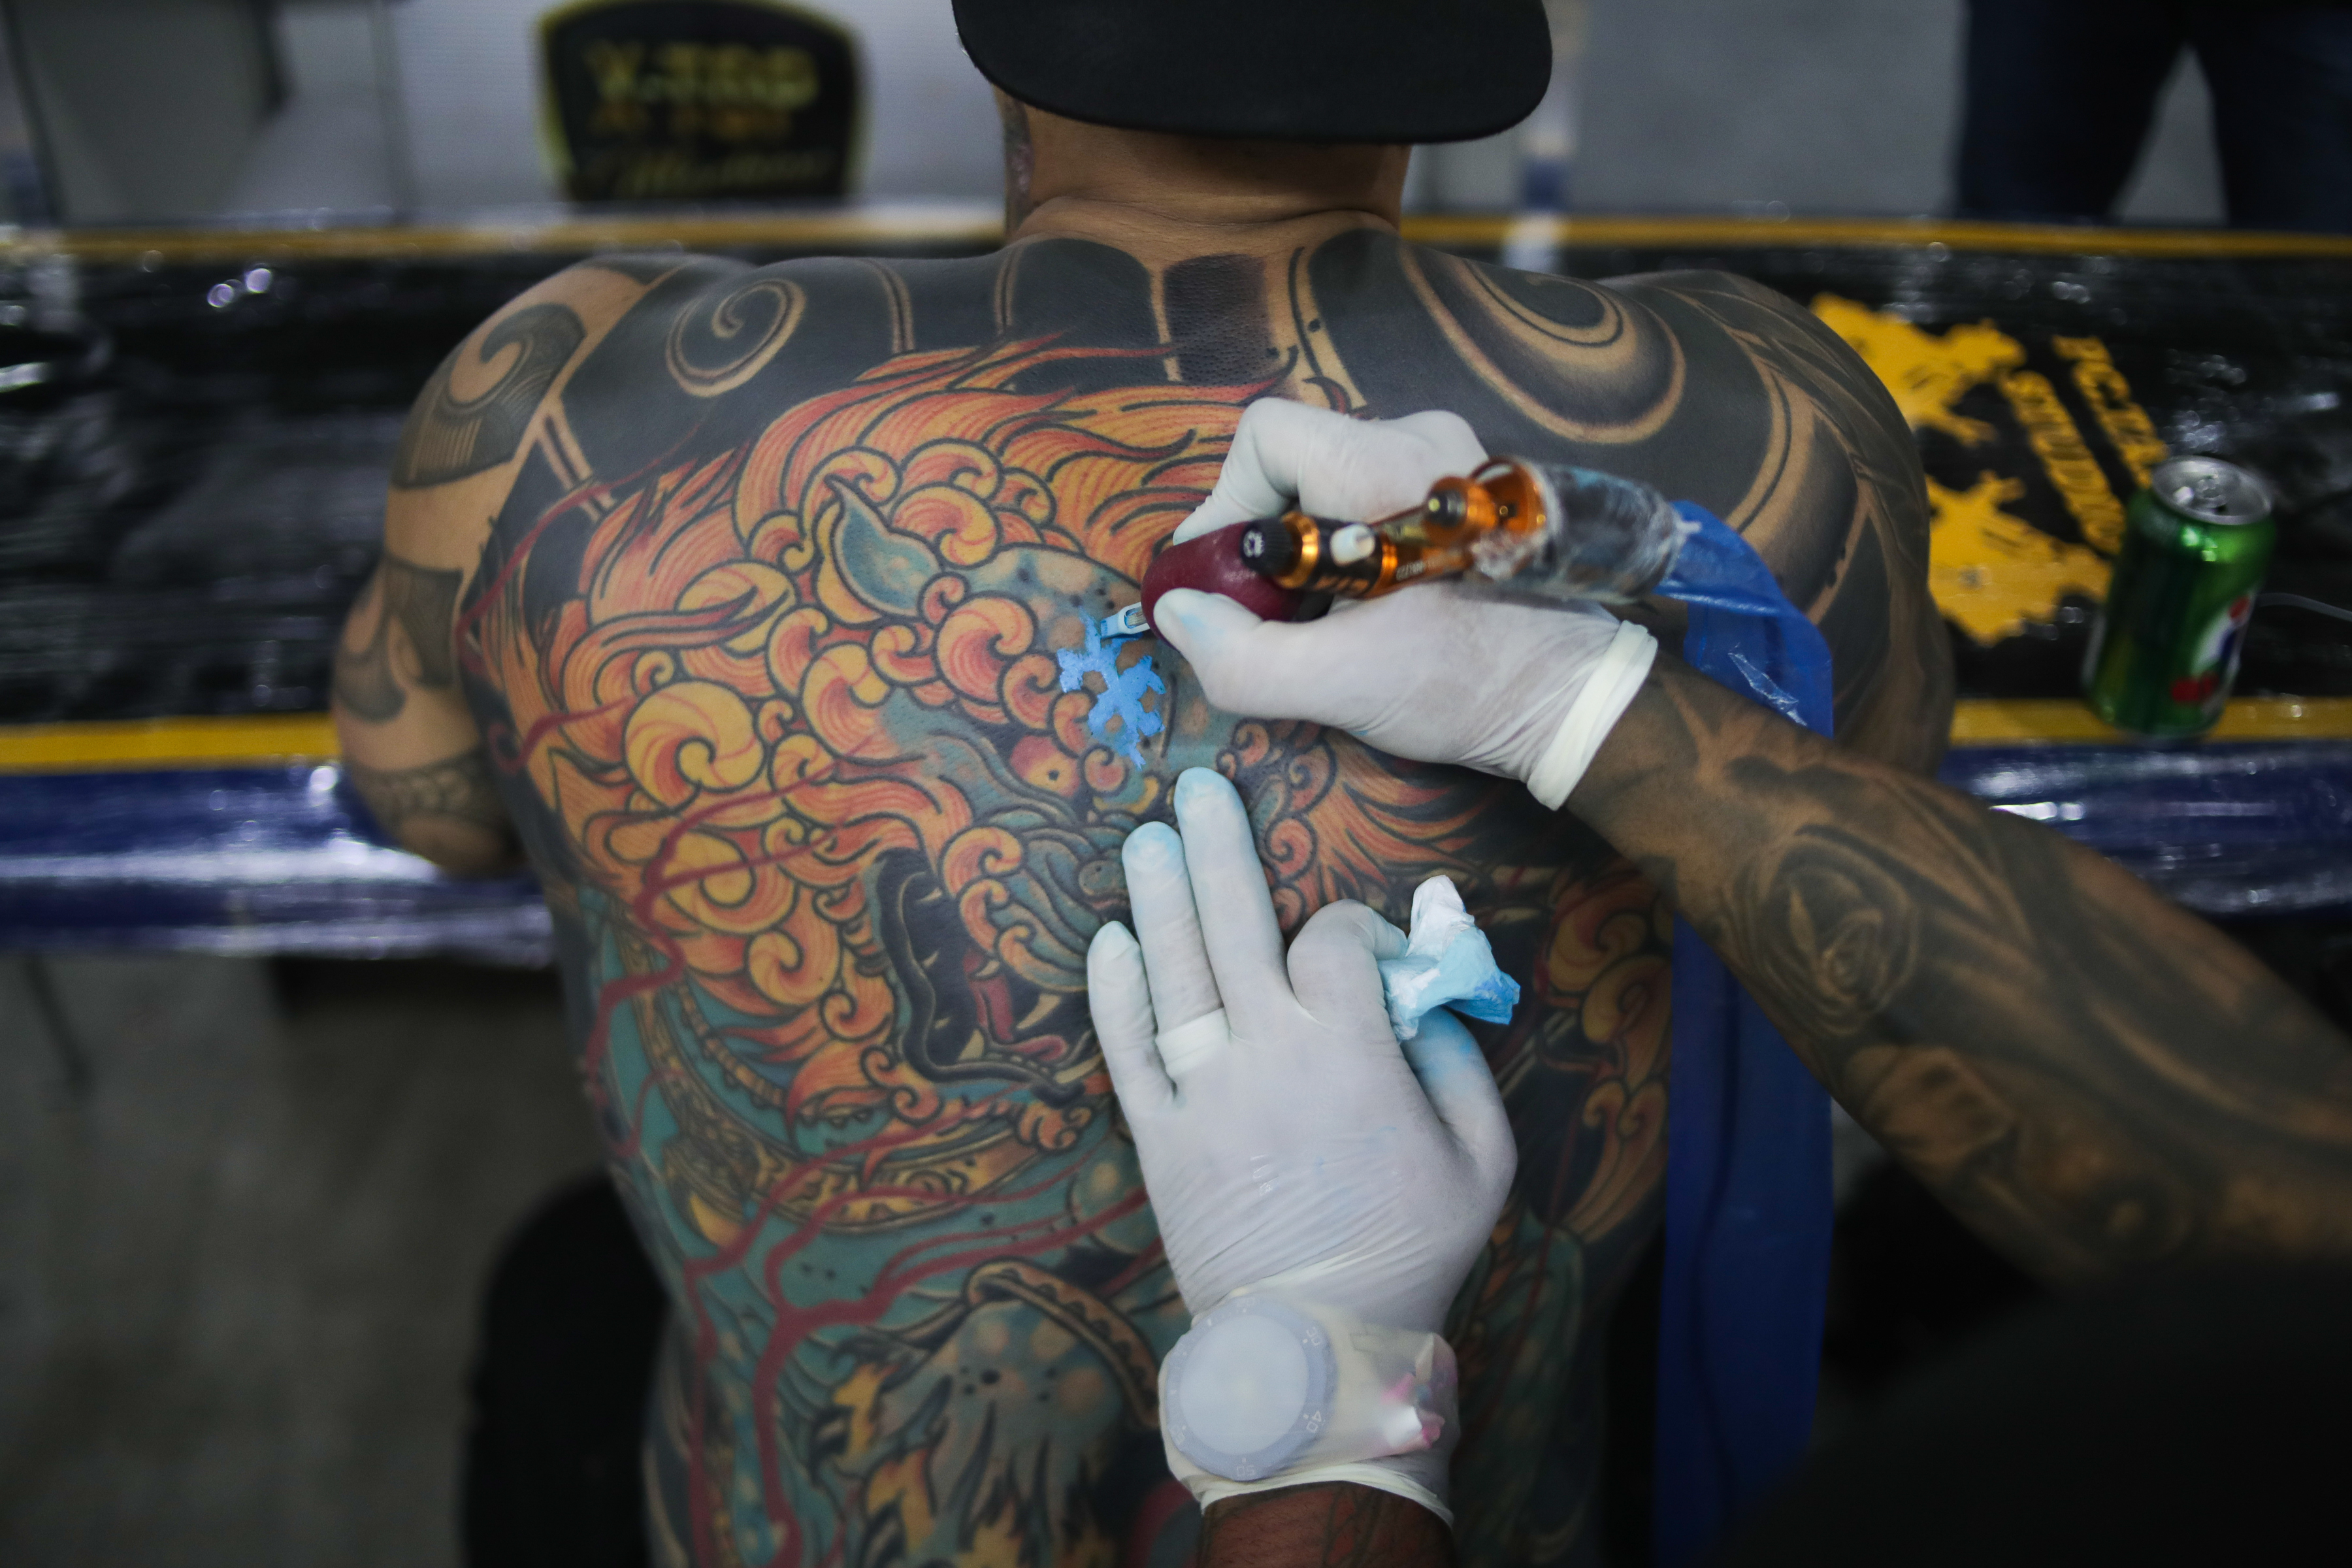 Los tatuajes sí se pueden borrar los más fáciles son los negros, azules y rojos